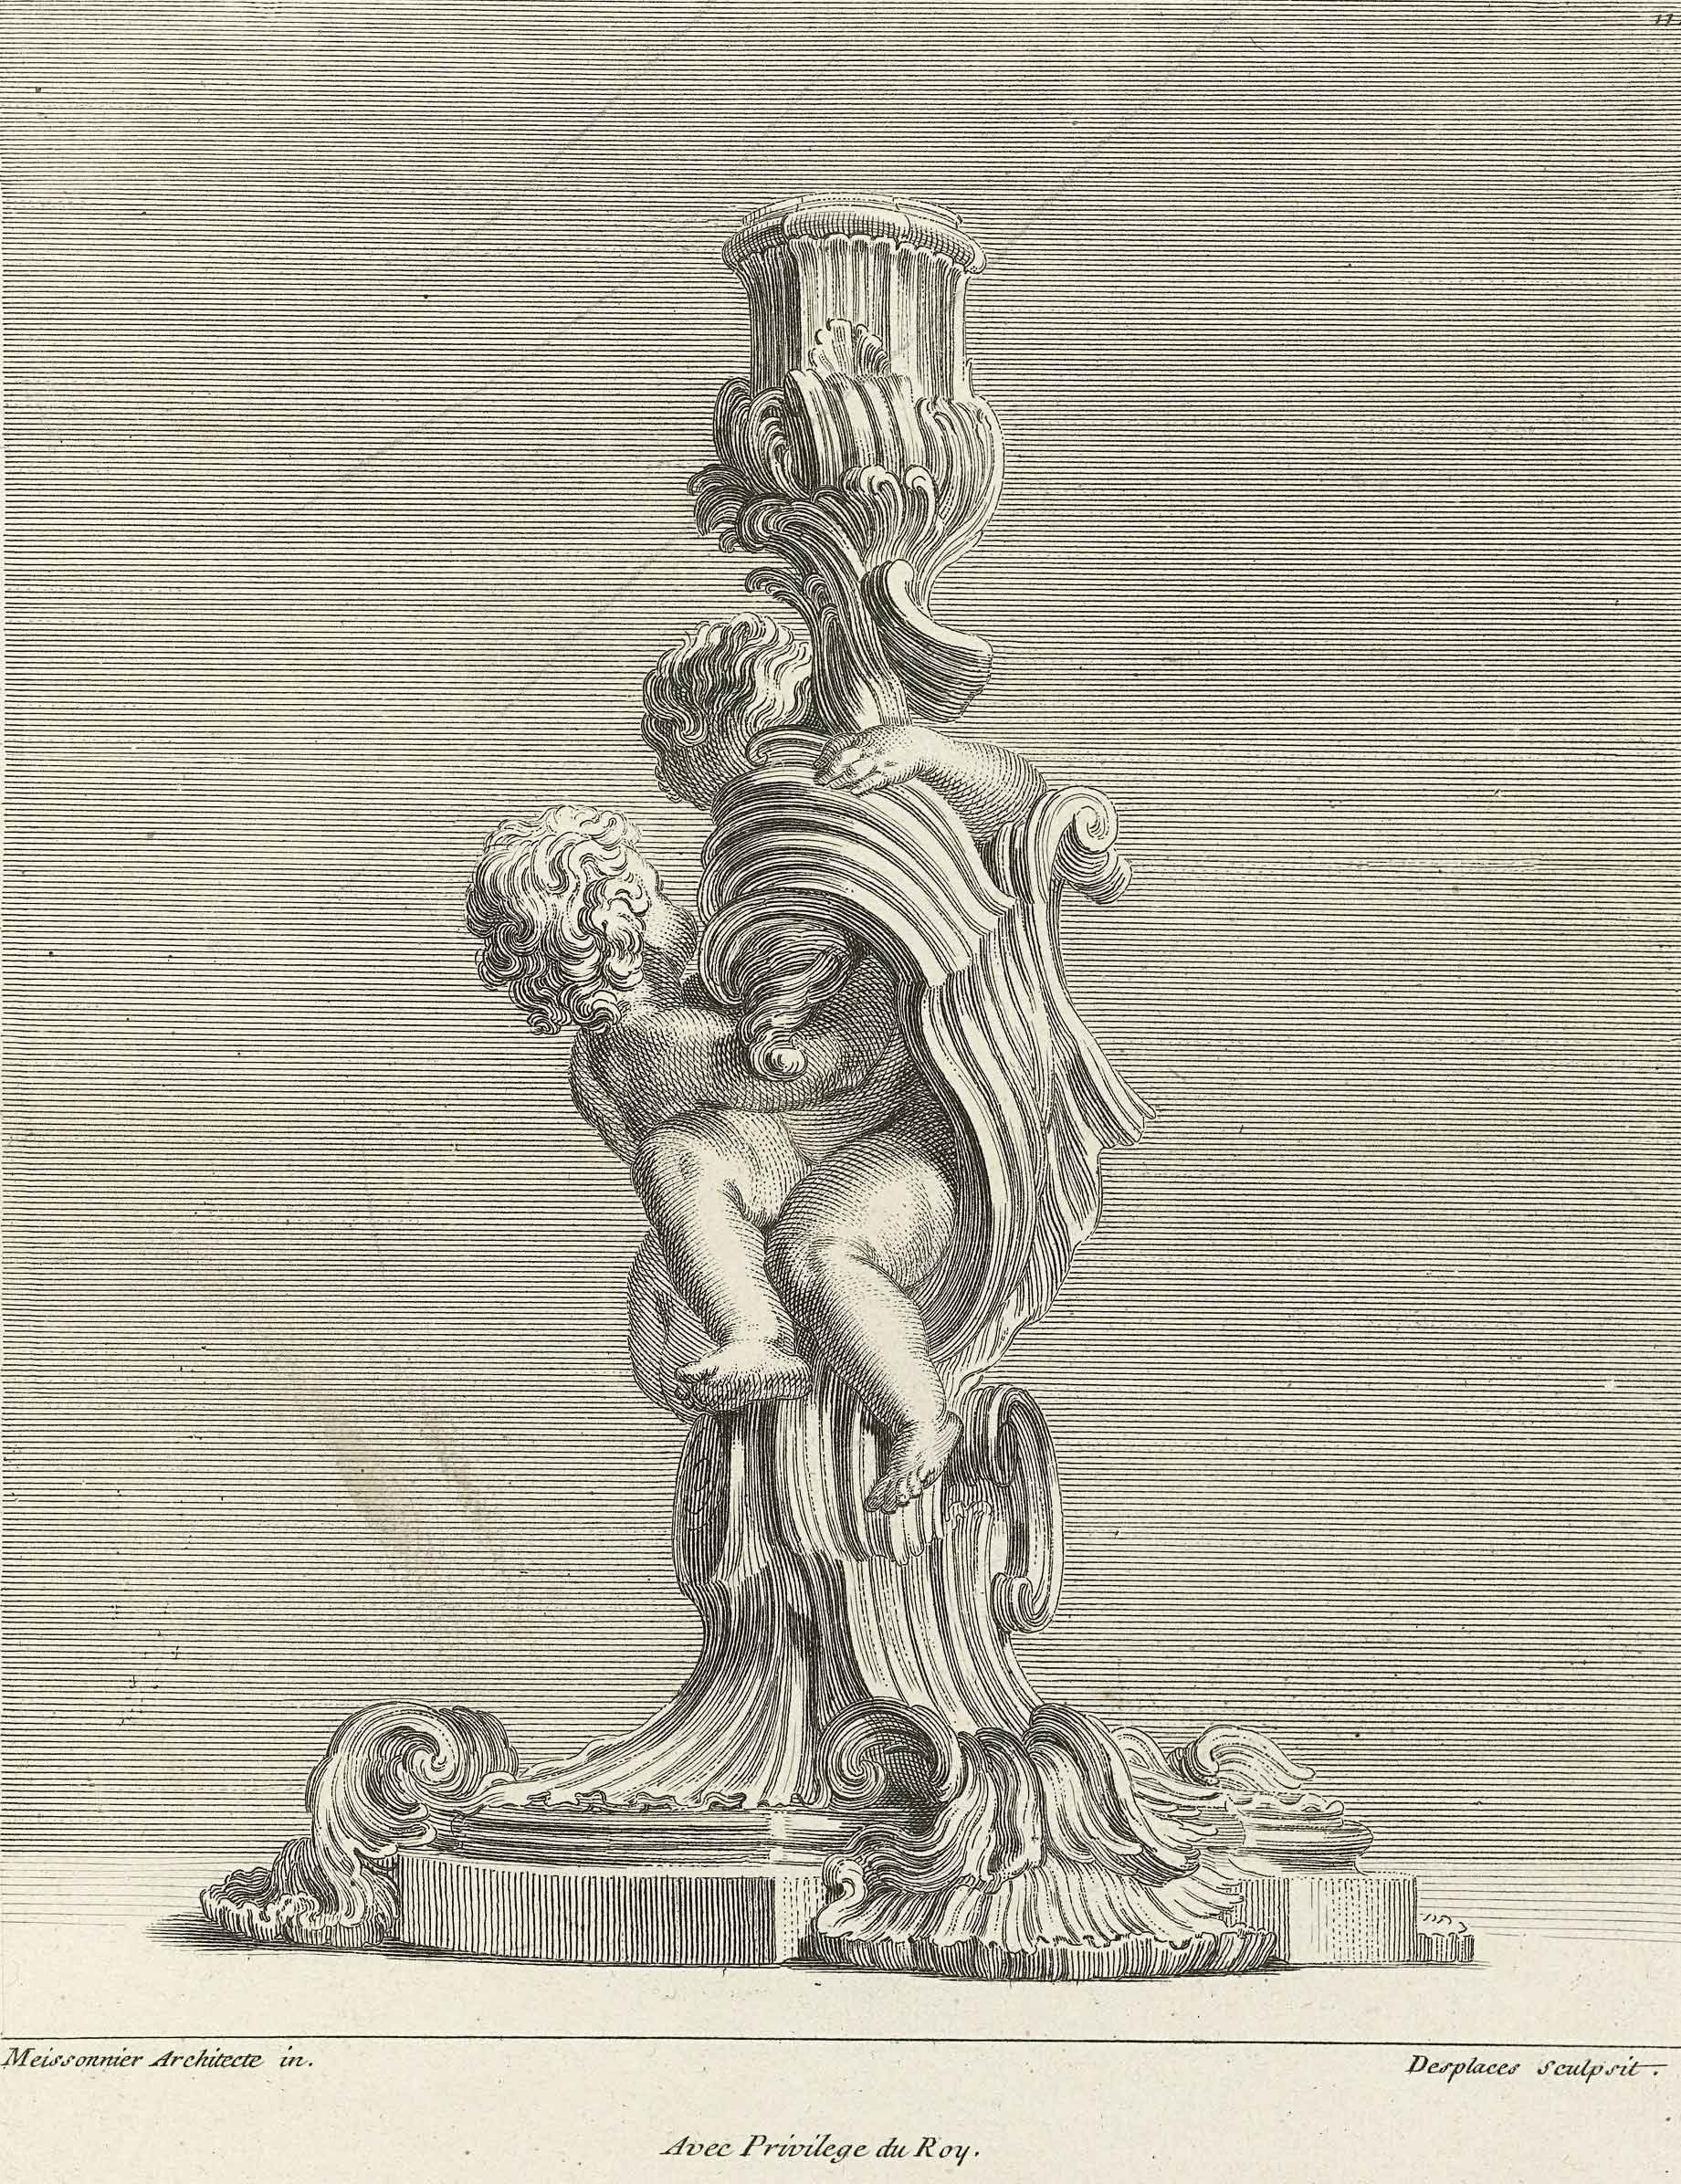 Kändler ve své modelérské práci tvůrčím způsobem přepracovával dobové vzory, jaké zastupuje ukázka svícnu ze vzorníku Juste Aurella Meissonniera (1728). Public domain.